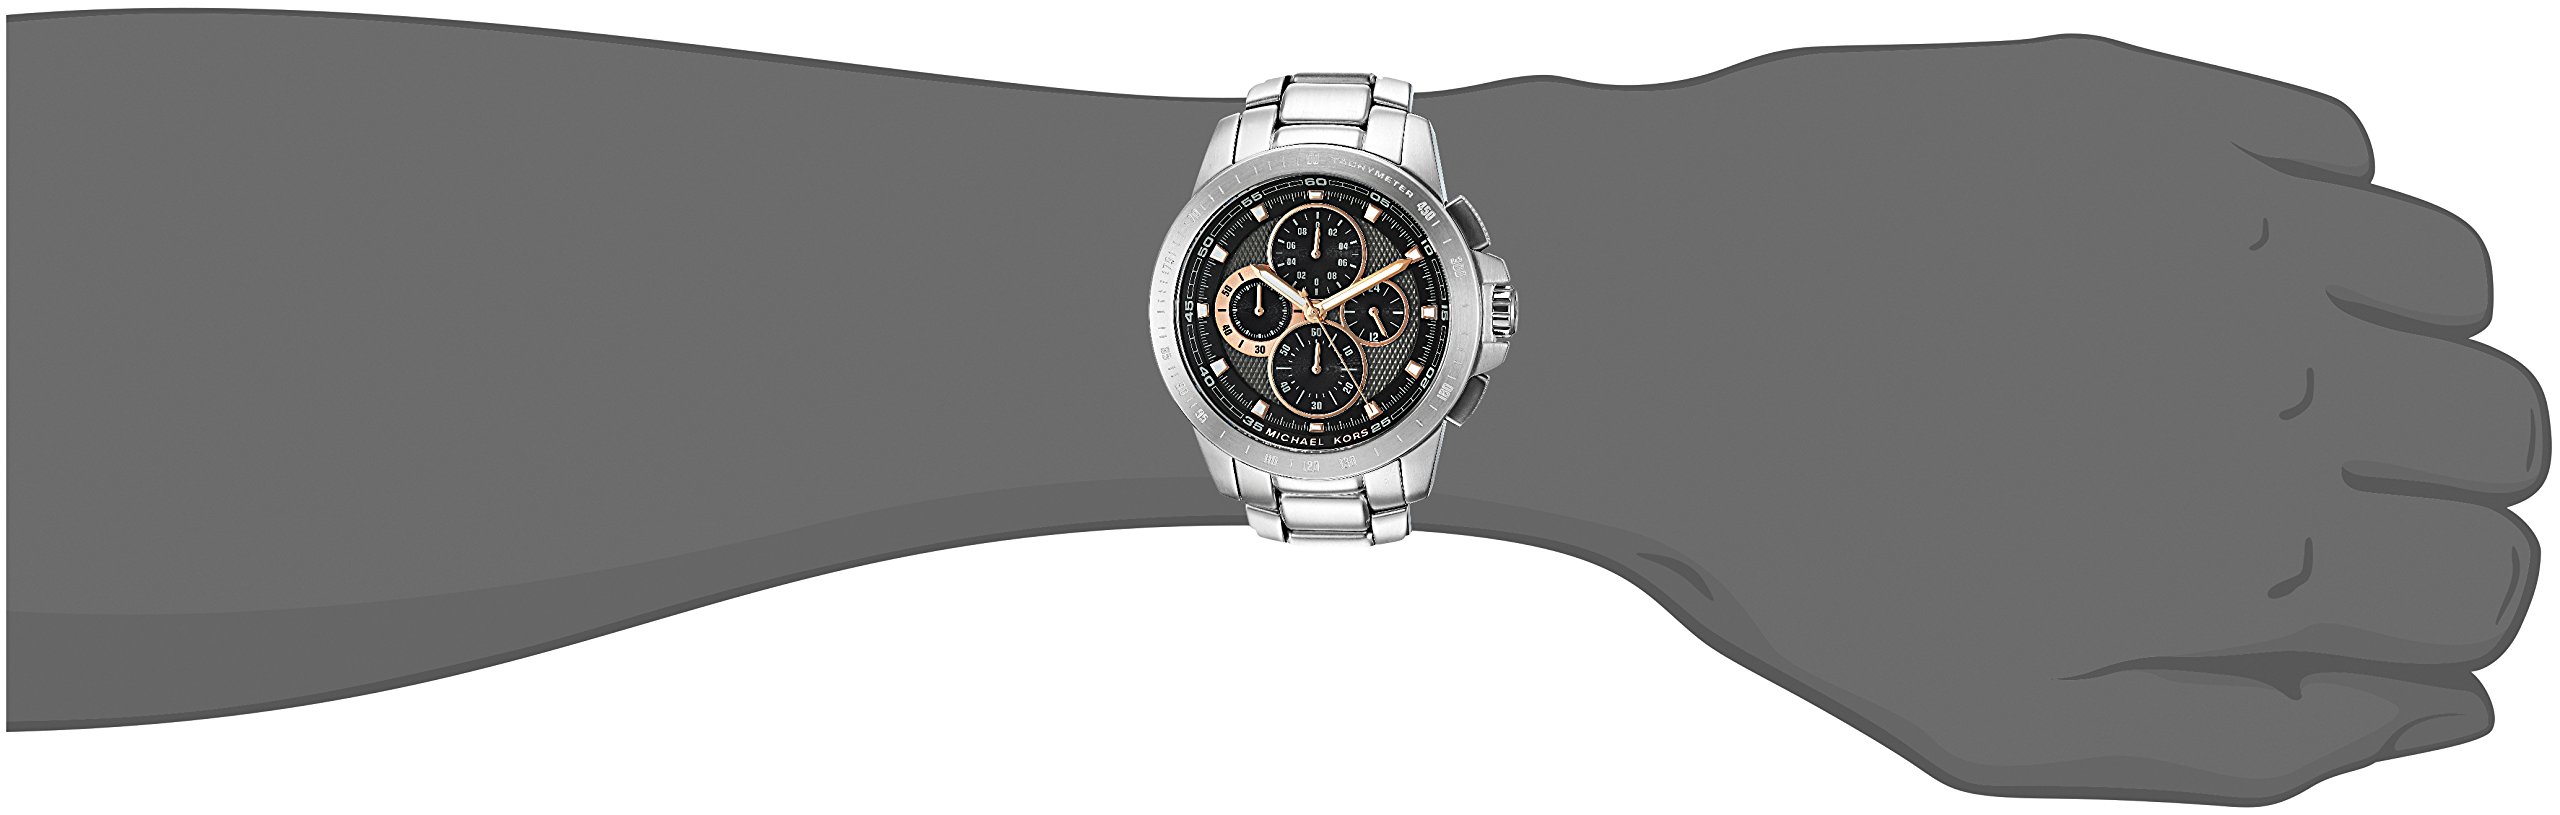 Michael Kors Men's Ryker Silver Watch MK8528